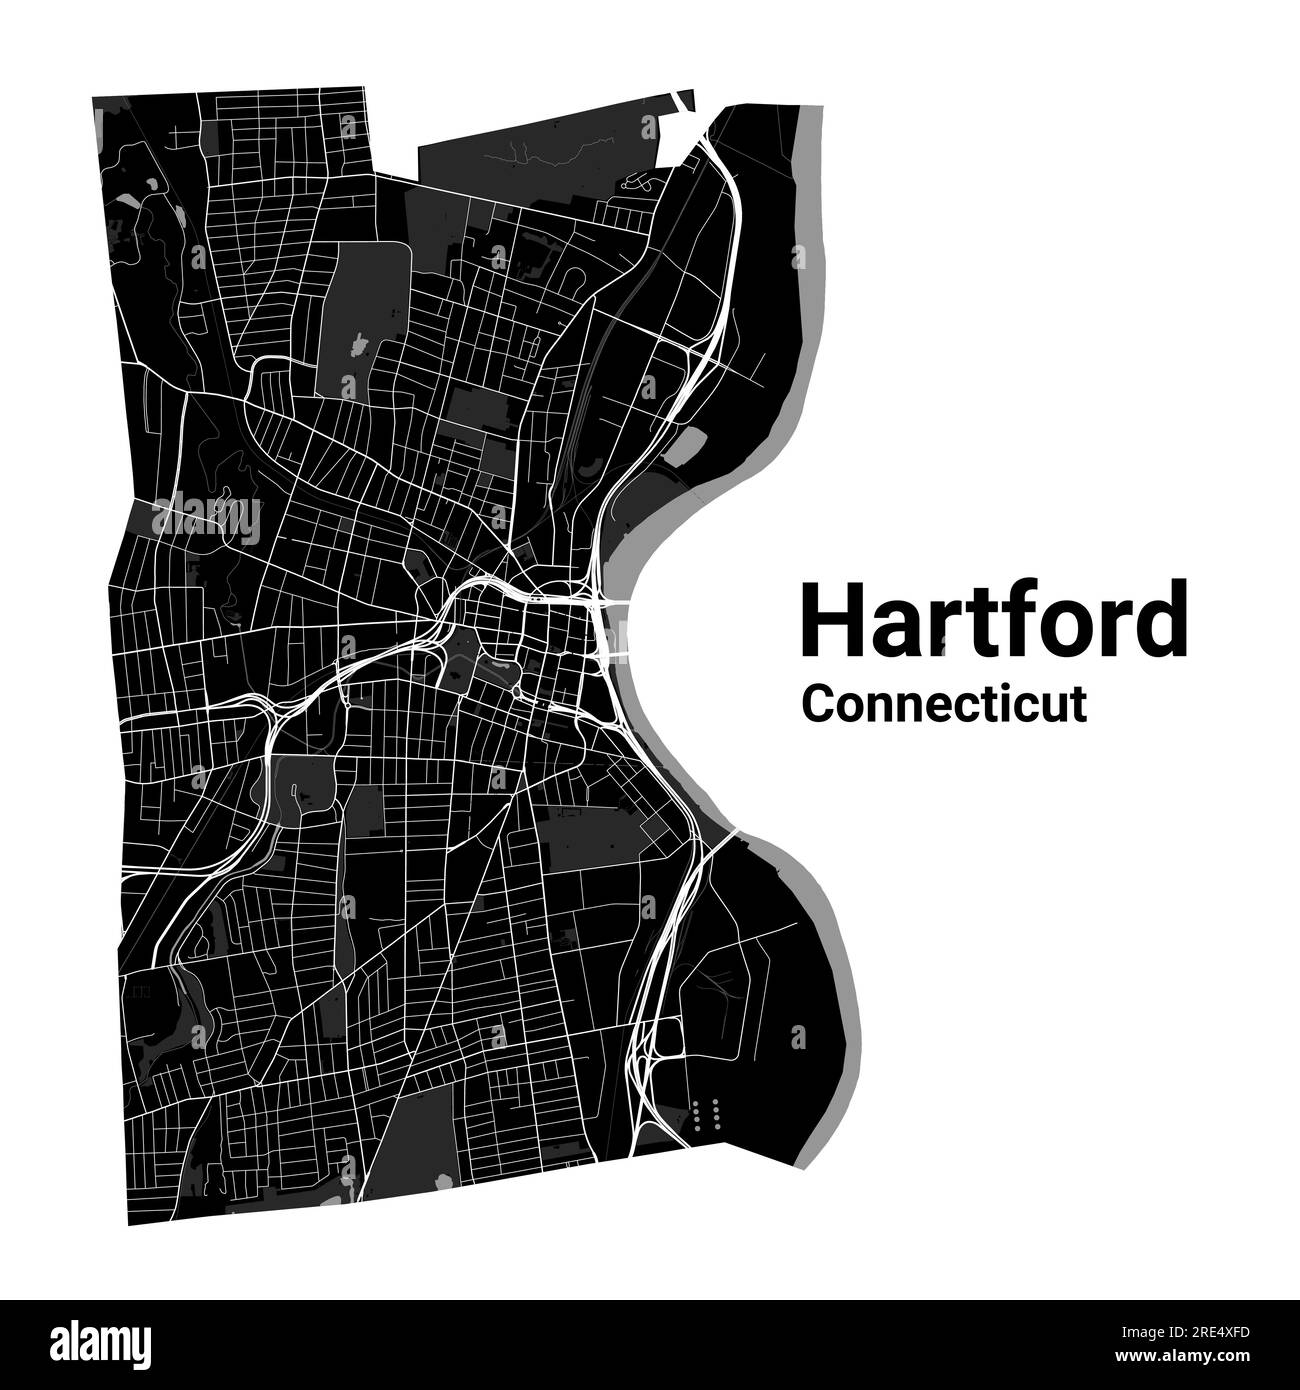 Mappa della città di Hartford, capitale dello stato USA del Connecticut. Confini amministrativi comunali, mappa dell'area in bianco e nero con fiumi e strade, parchi e Illustrazione Vettoriale